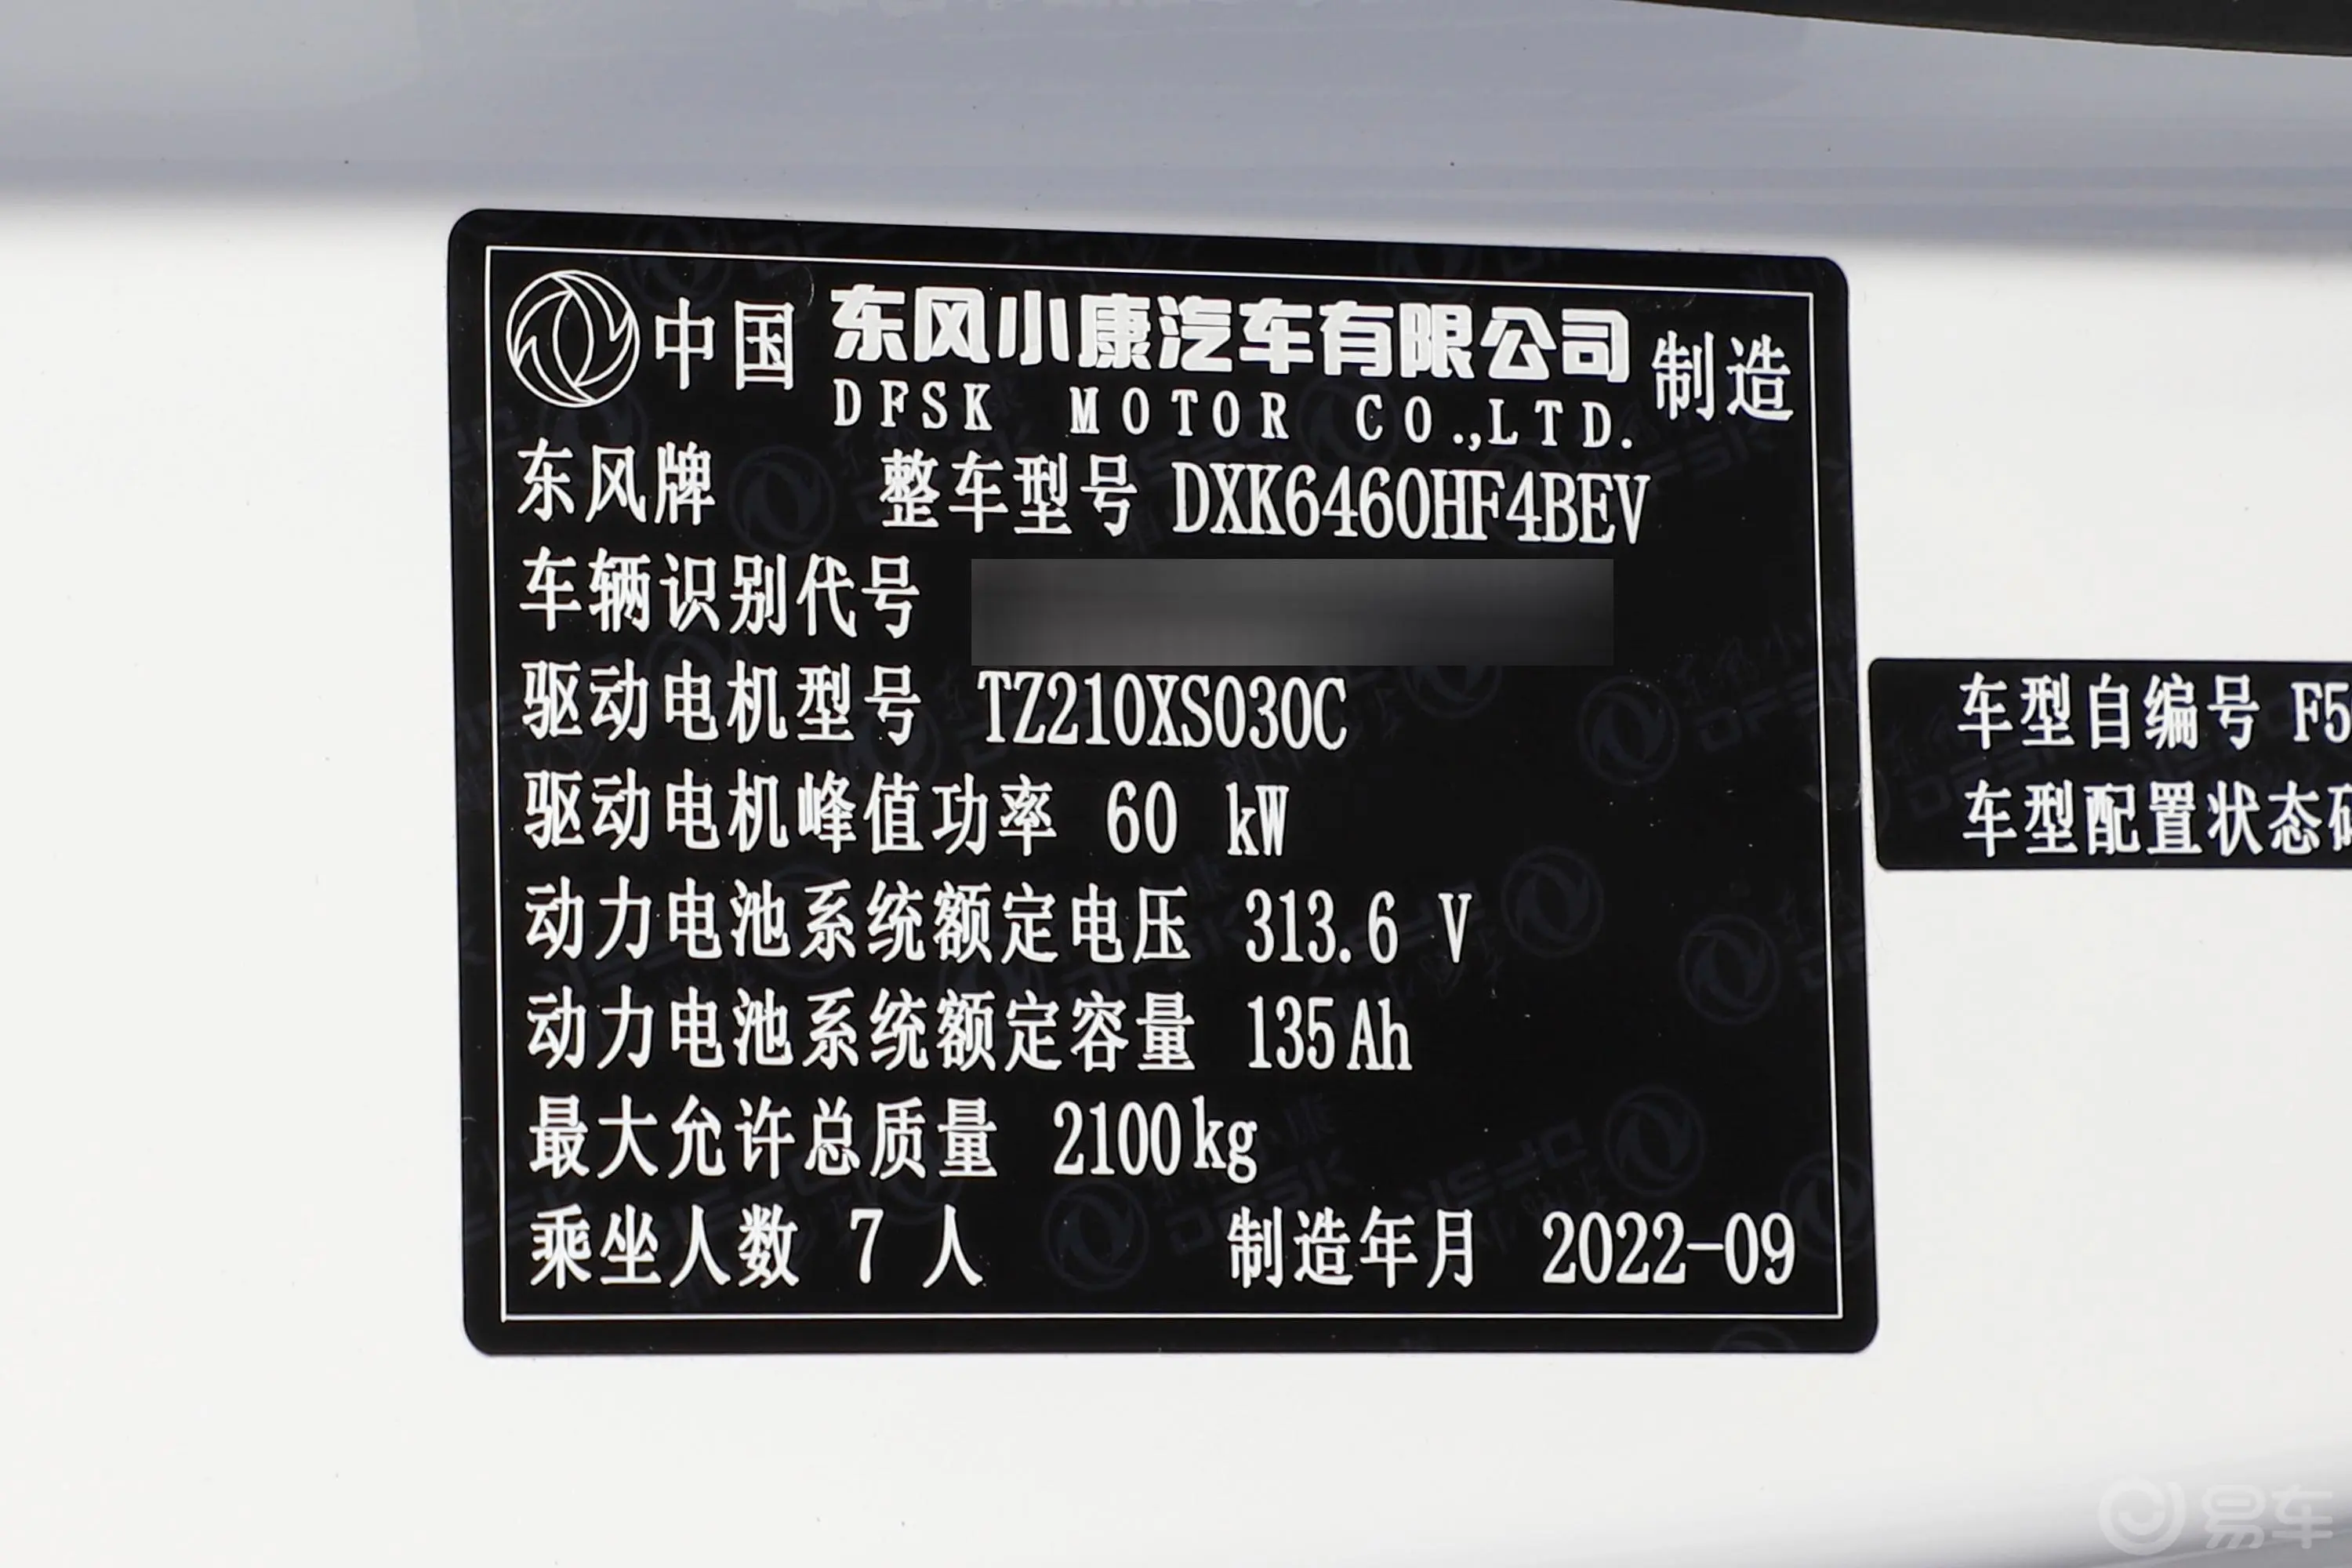 风光E380310km 标准版舒适型 7座车辆信息铭牌